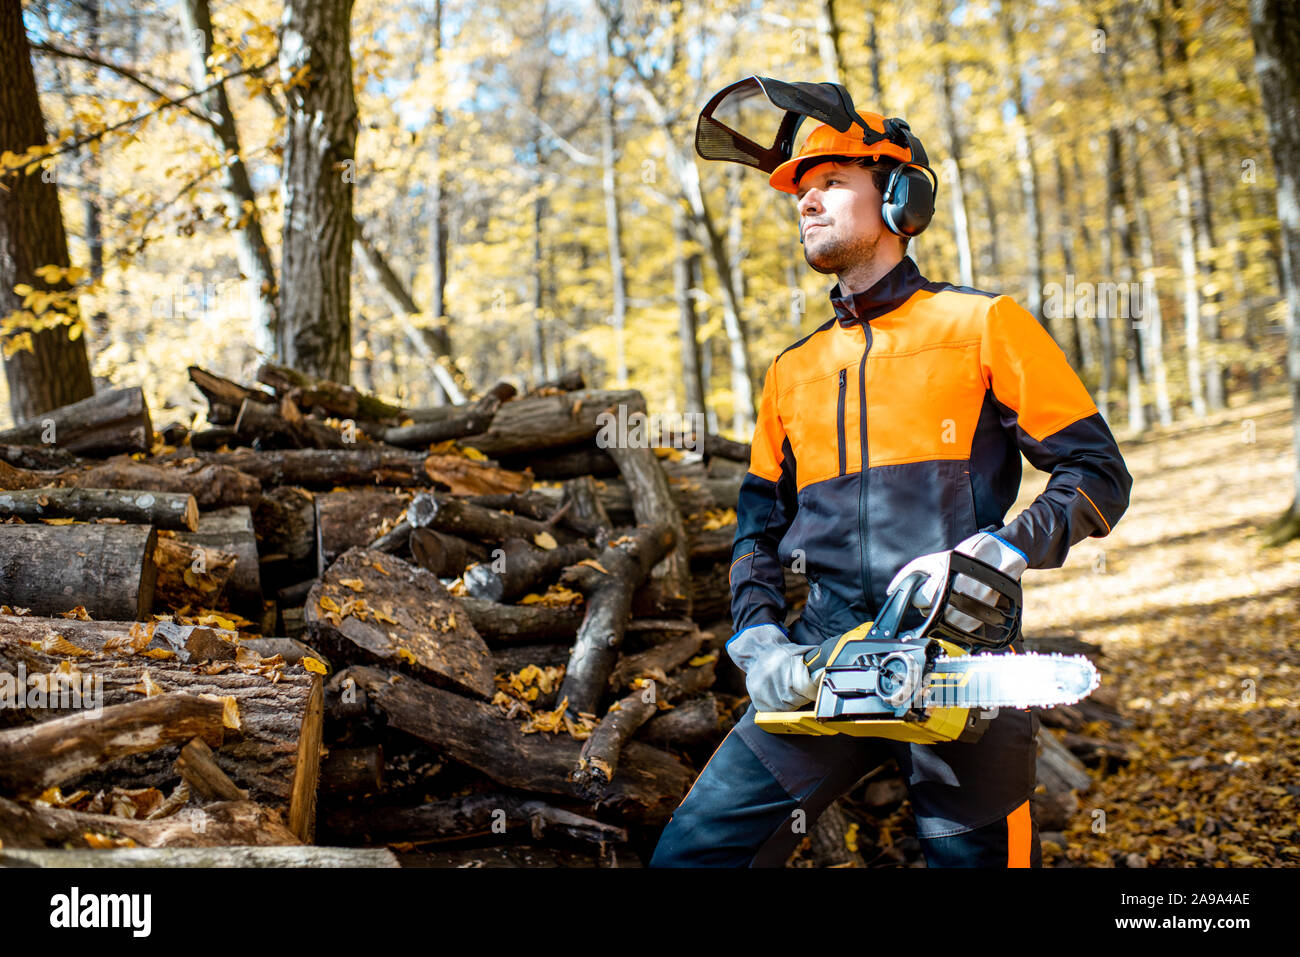 Ritratto di un bel professional lumberjack in indumenti da lavoro protettiva con una motosega nel bosco Foto Stock